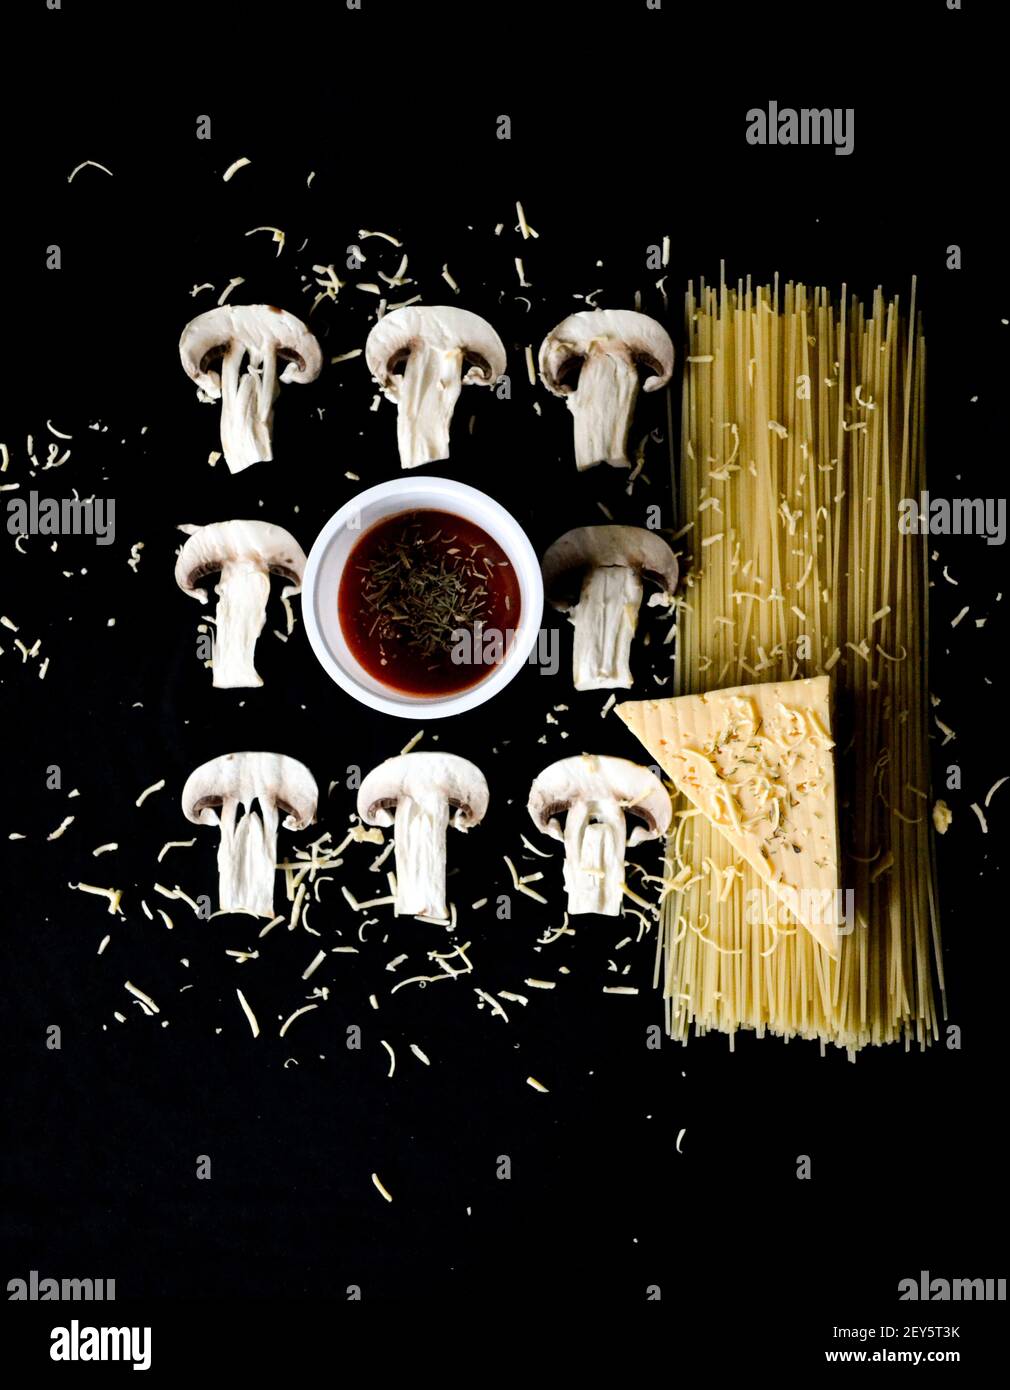 funghi tritati con pasta e formaggio su fondo nero Foto Stock